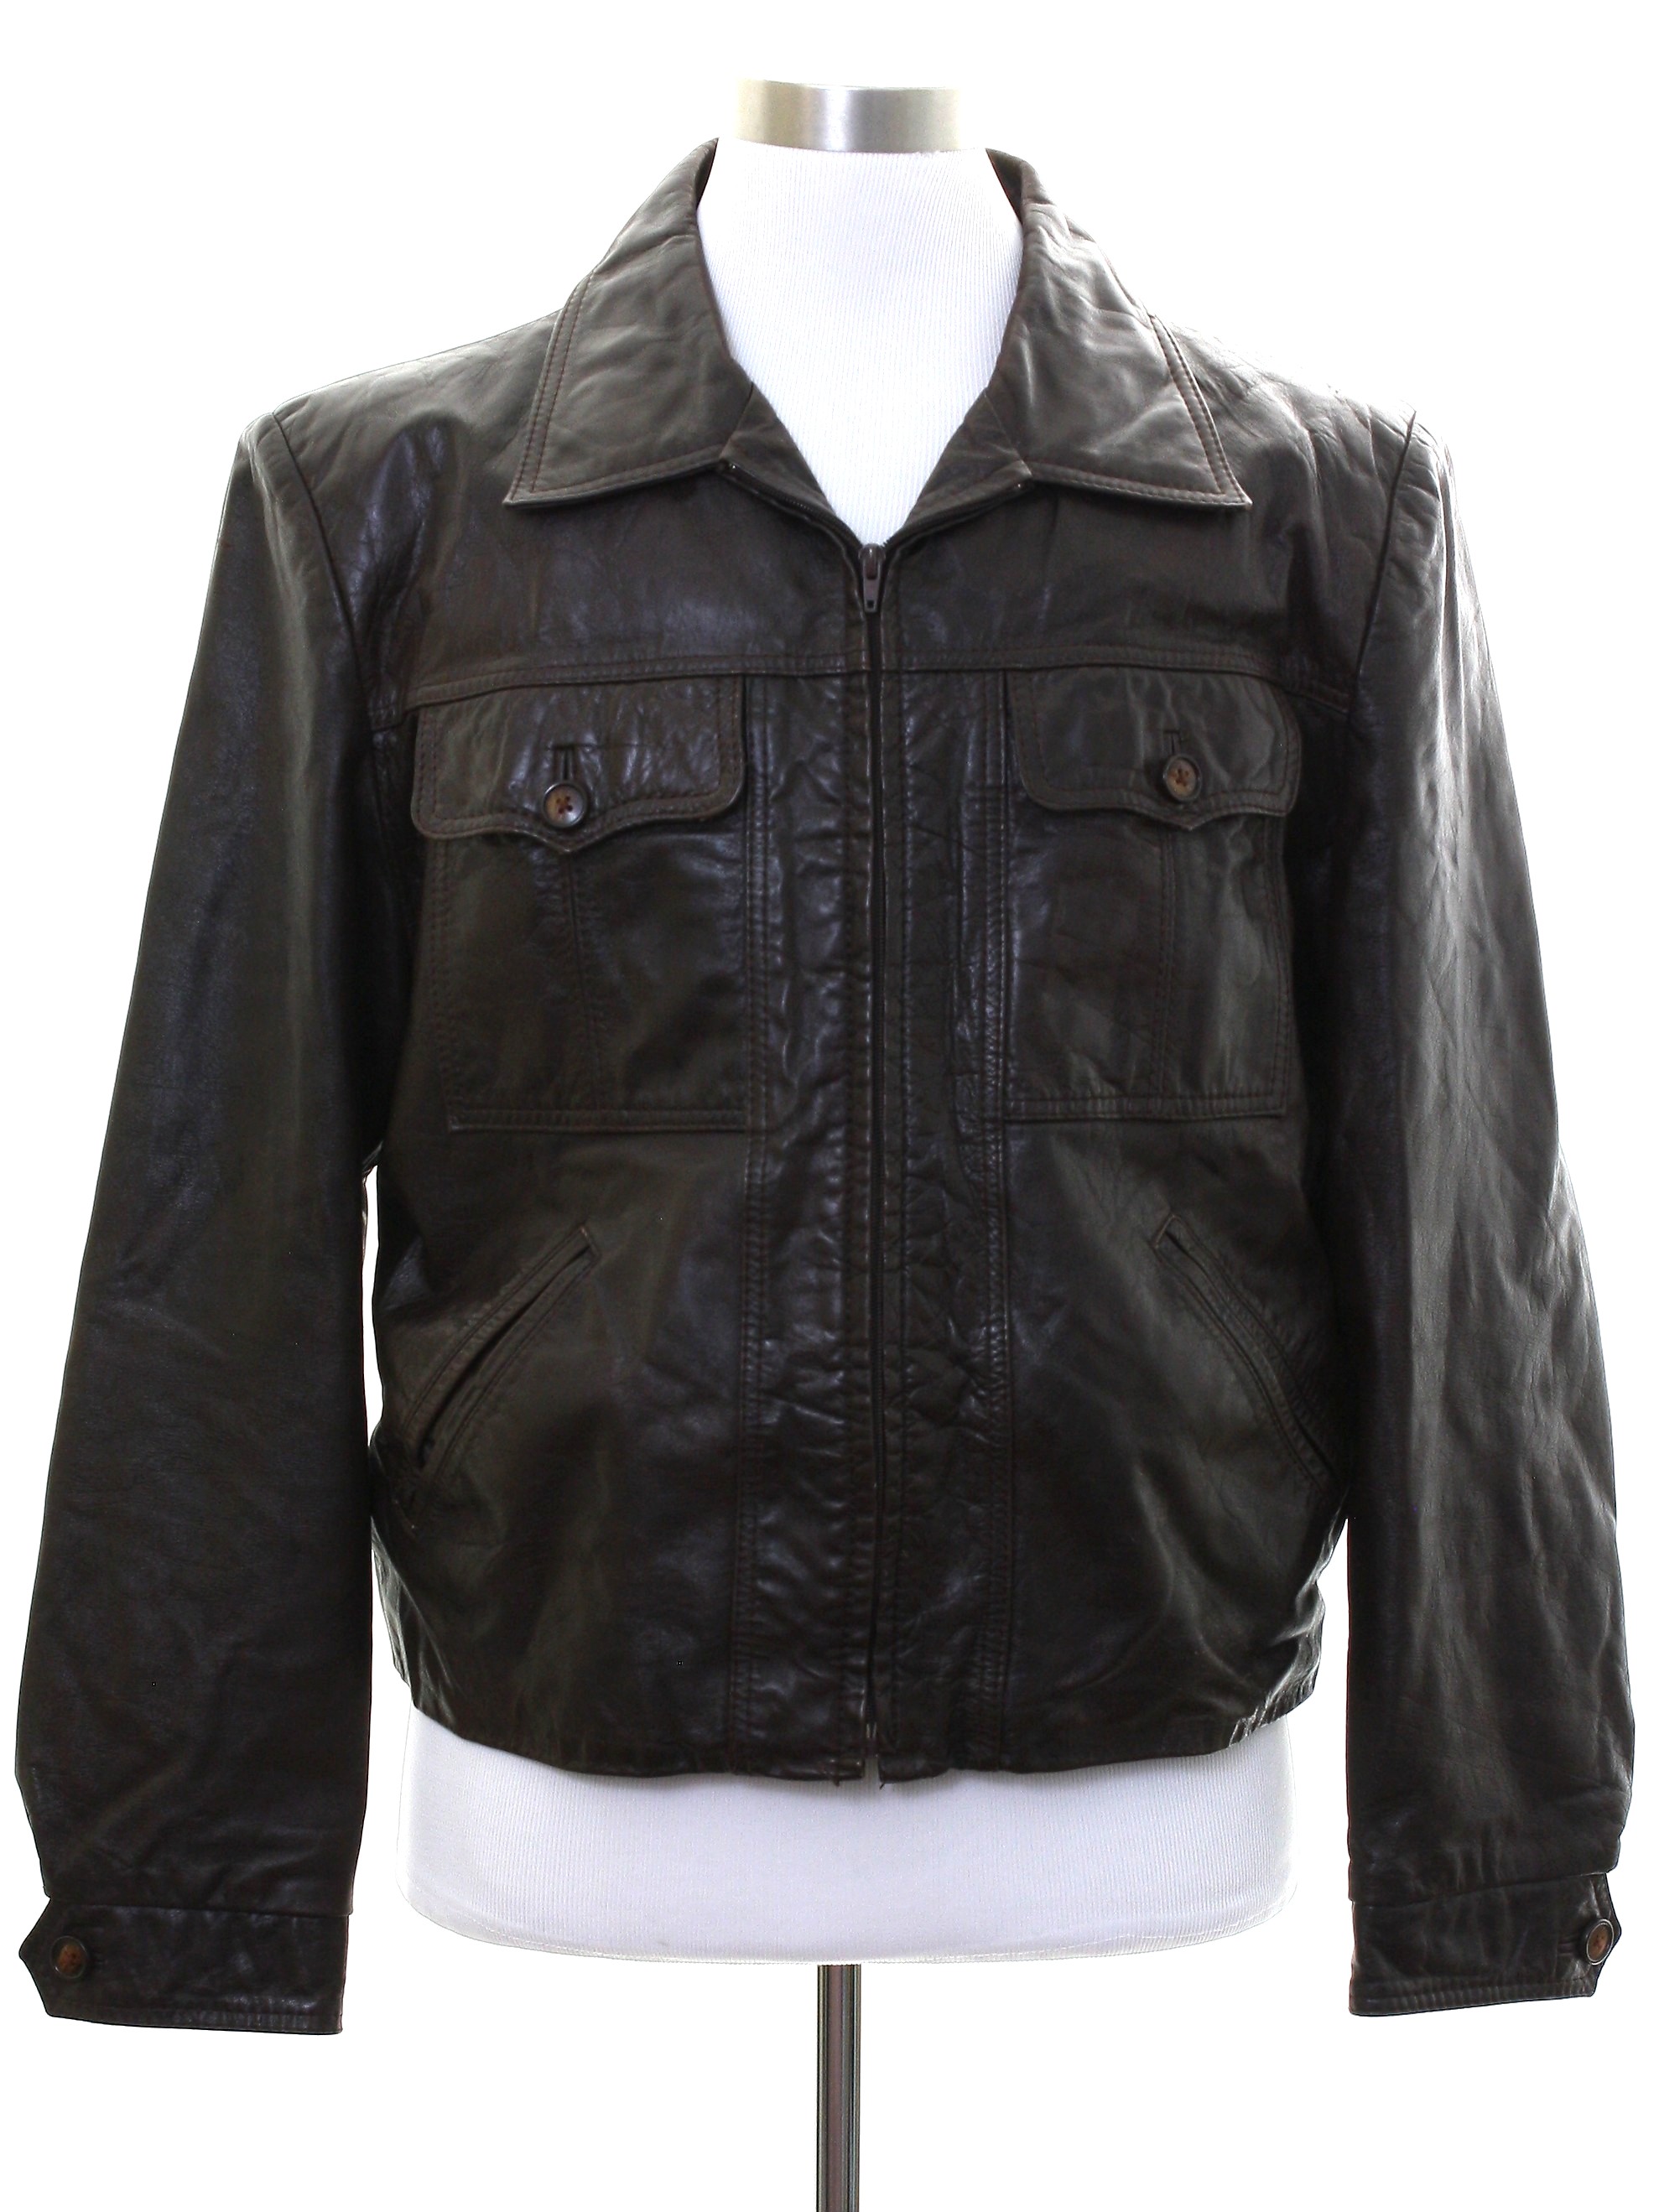 Retro 1970's Leather Jacket (Silton) : 70s -Silton- Mens dark brown